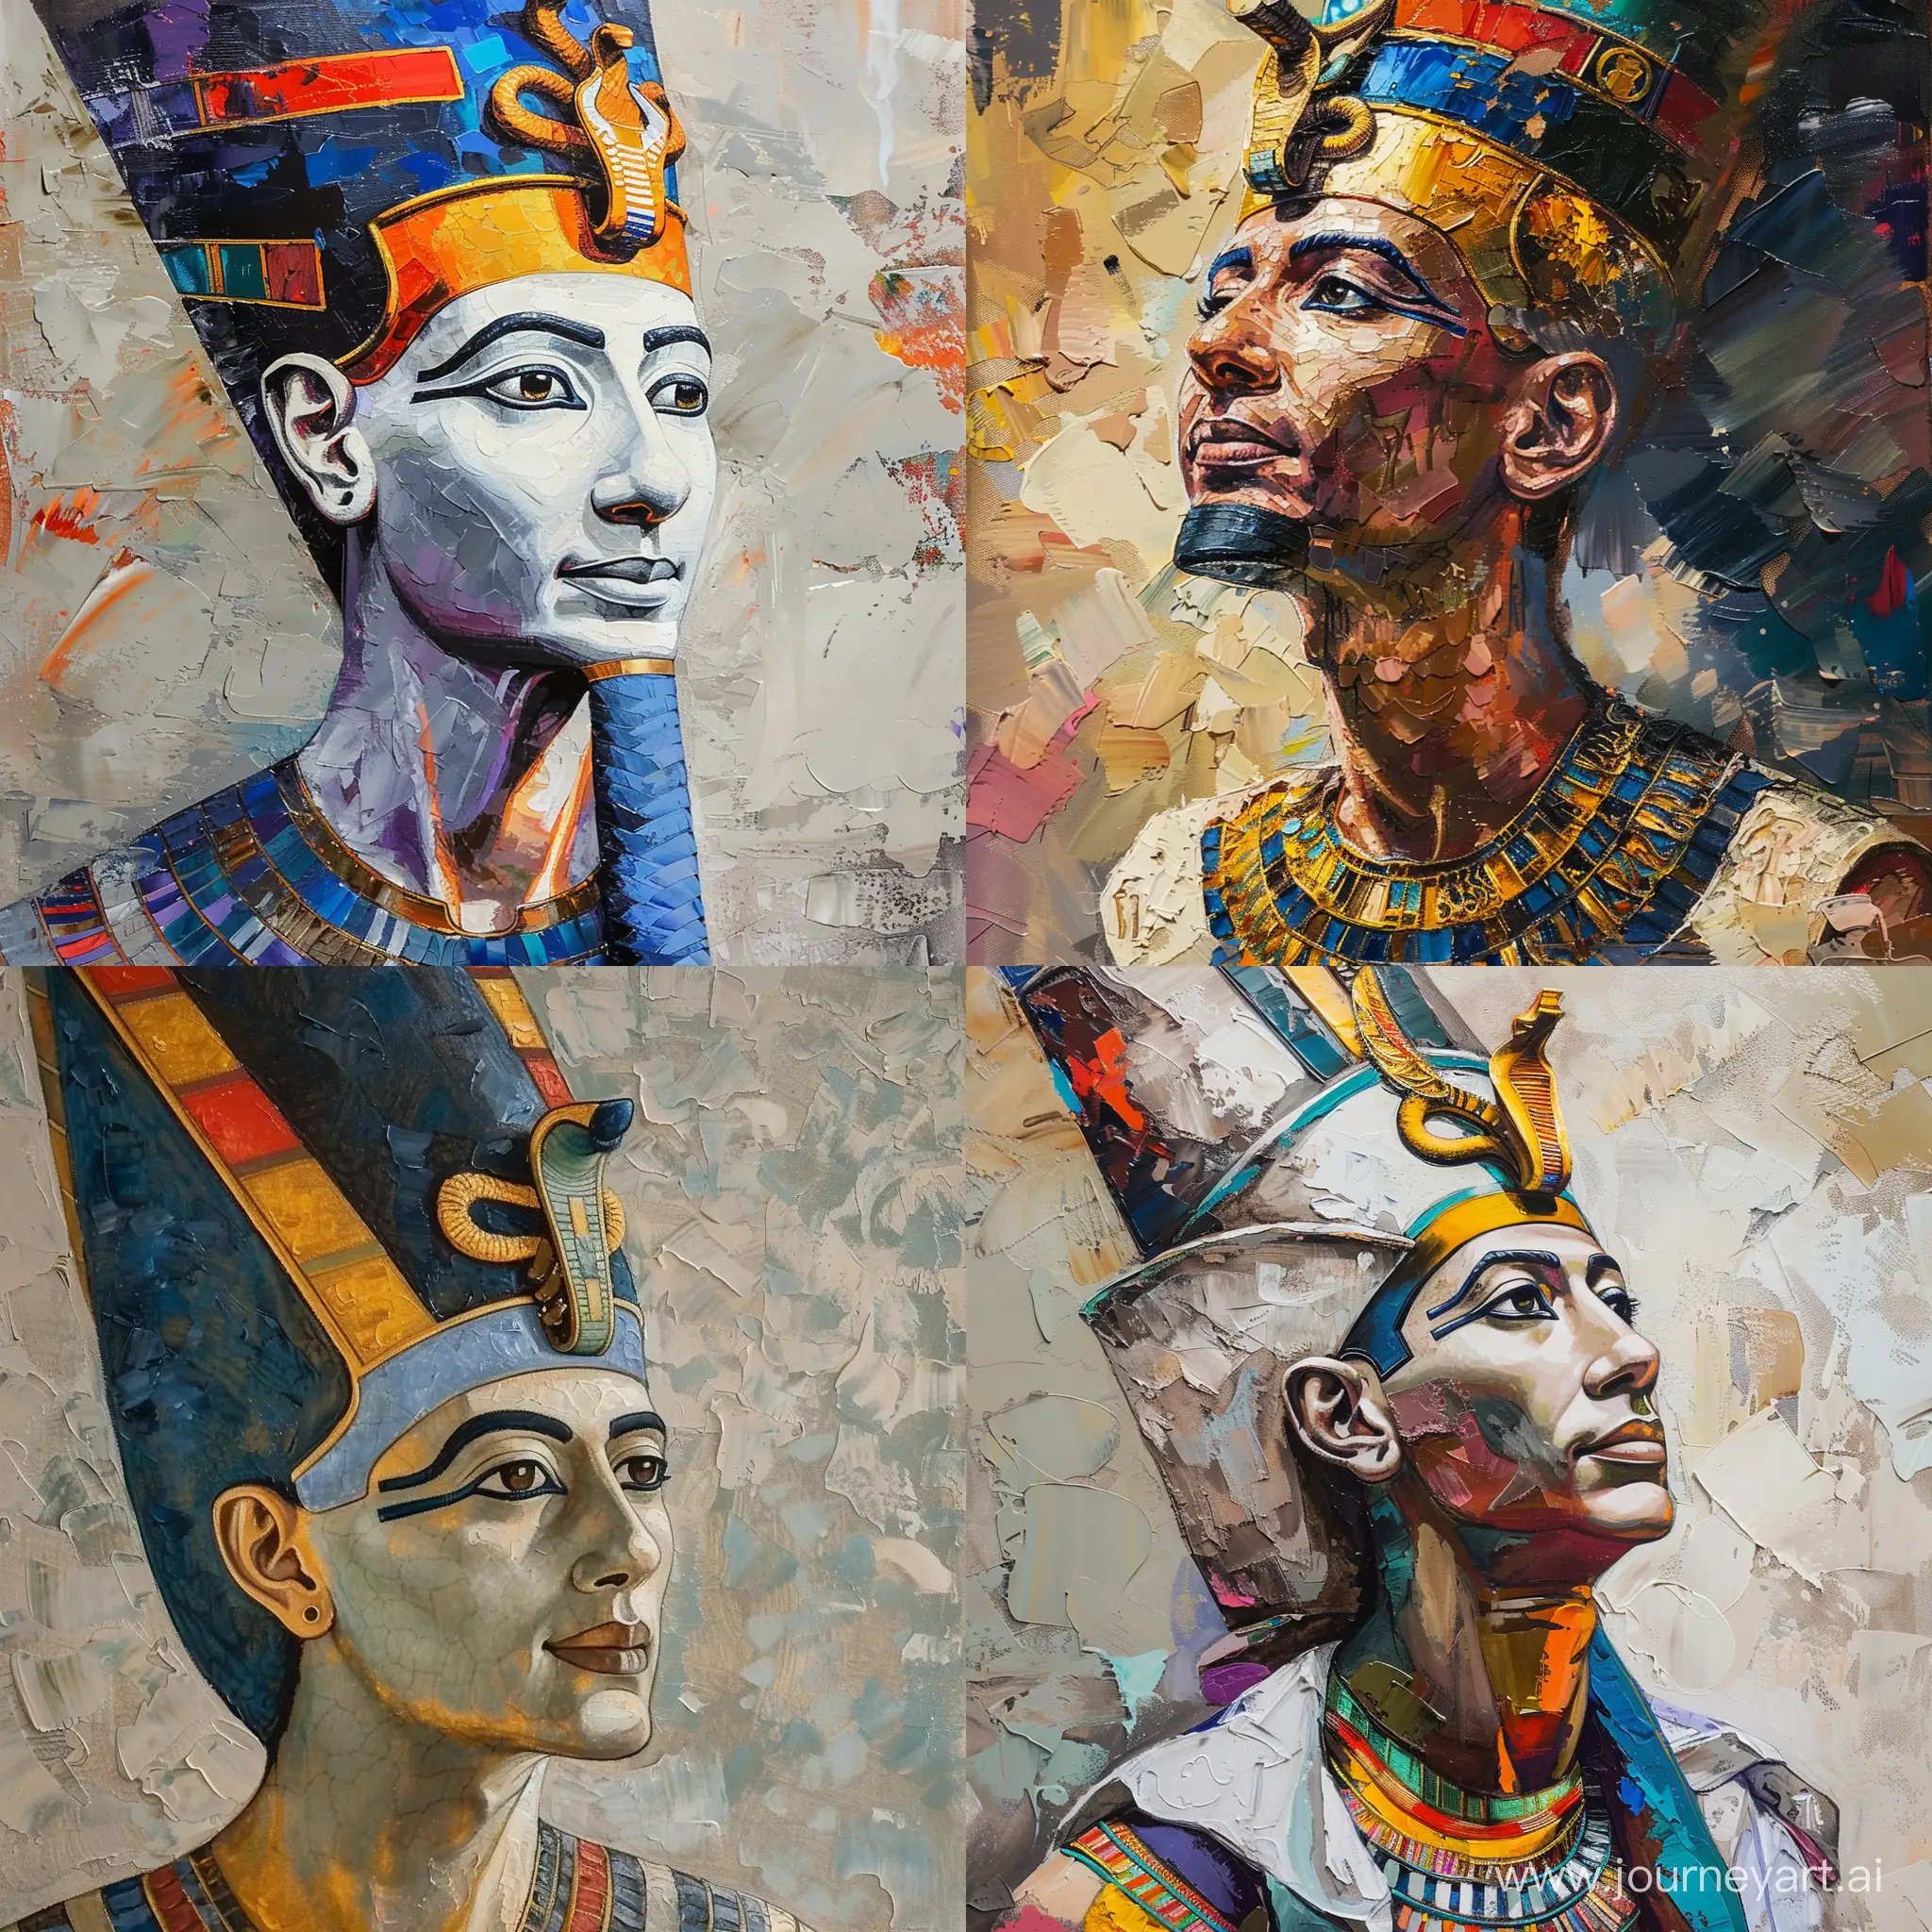 древнеегипетский бог Осирис, любопытный взгляд, средний план, масляная живопись, детальная проработка, стилизация, высокое качество, ярко, красочно